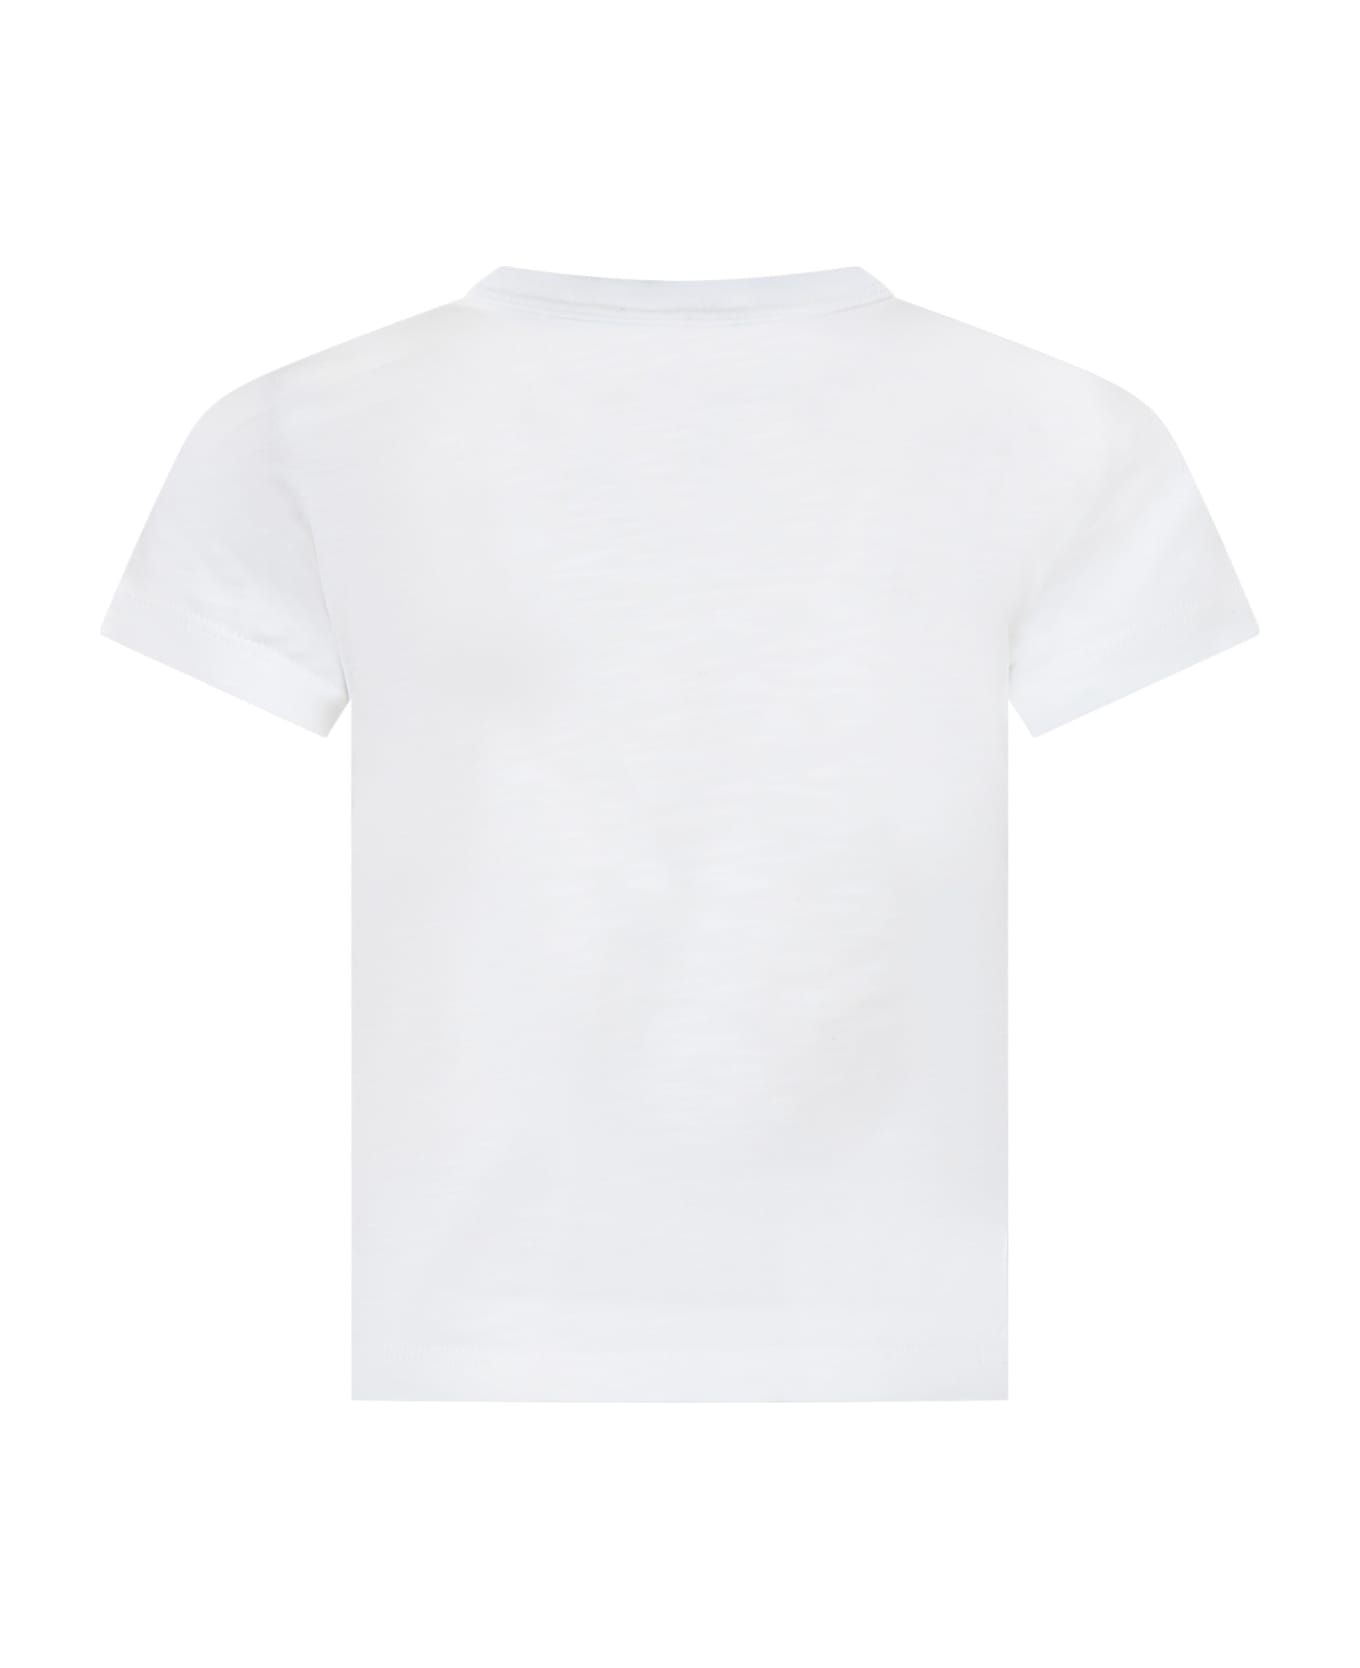 Petit Bateau White T-shirt For Kids - White